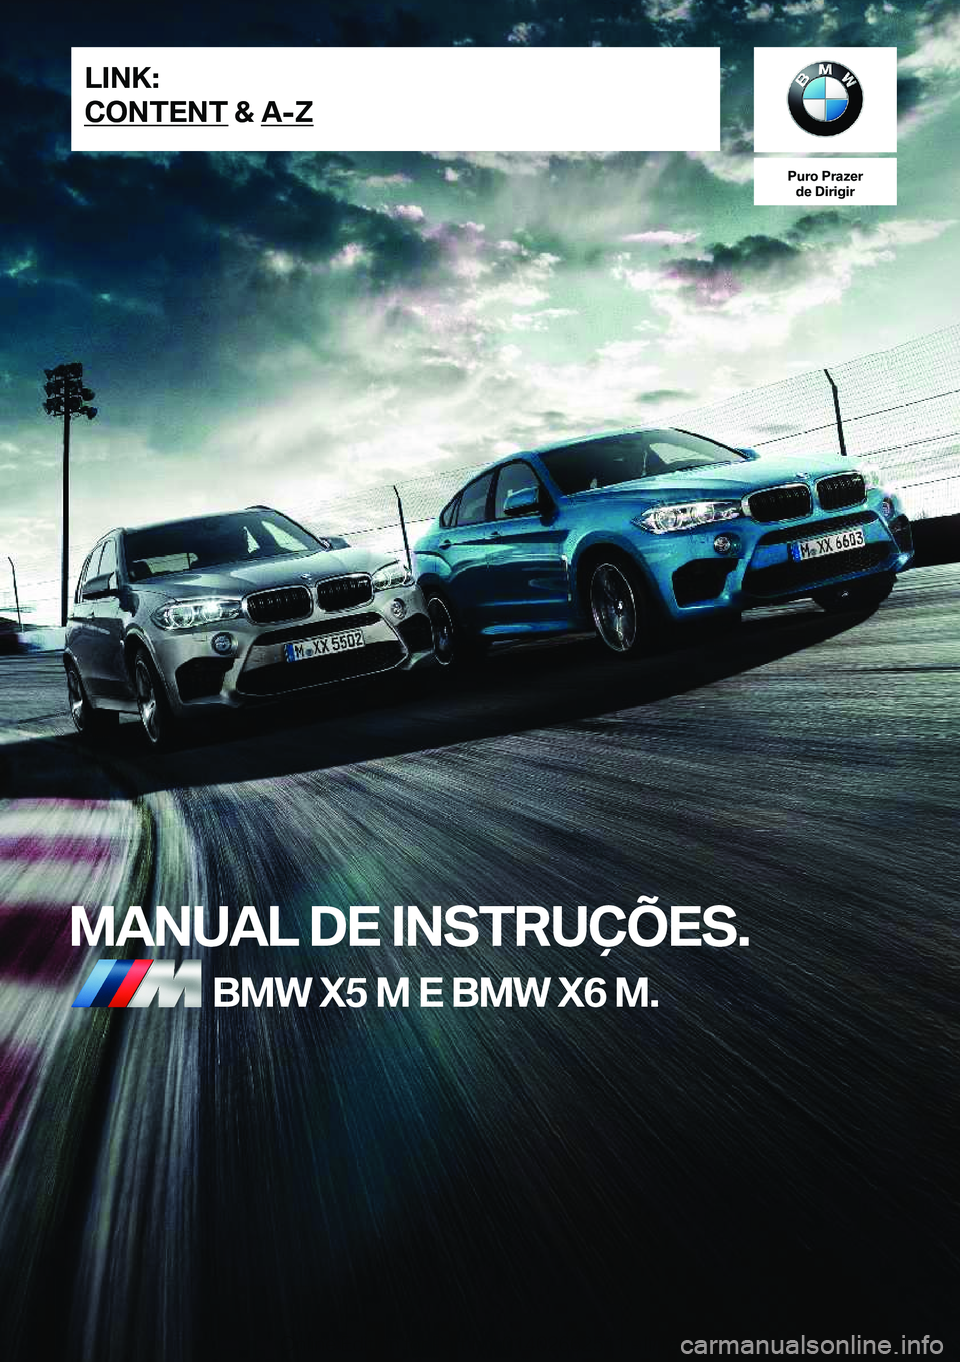 BMW X5 M 2018  Manual do condutor (in Portuguese) �P�u�r�o��P�r�a�z�e�r�d�e��D�i�r�i�g�i�r
�M�A�N�U�A�L��D�E��I�N�S�T�R�U�